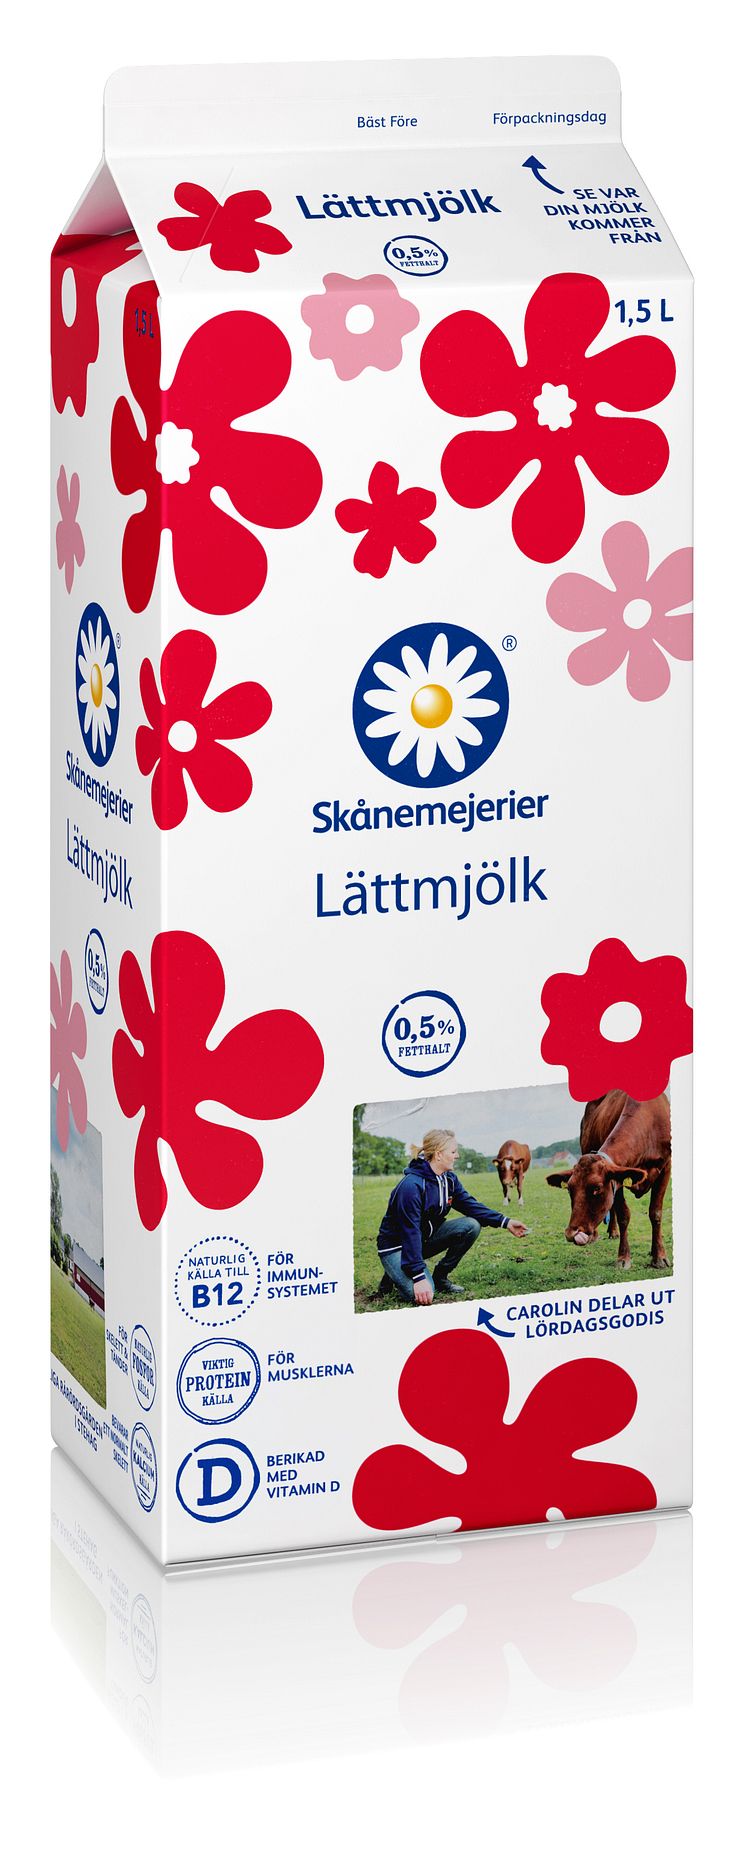 Skånemejeriers Lättmjölk 1,5 liter i ny kostym